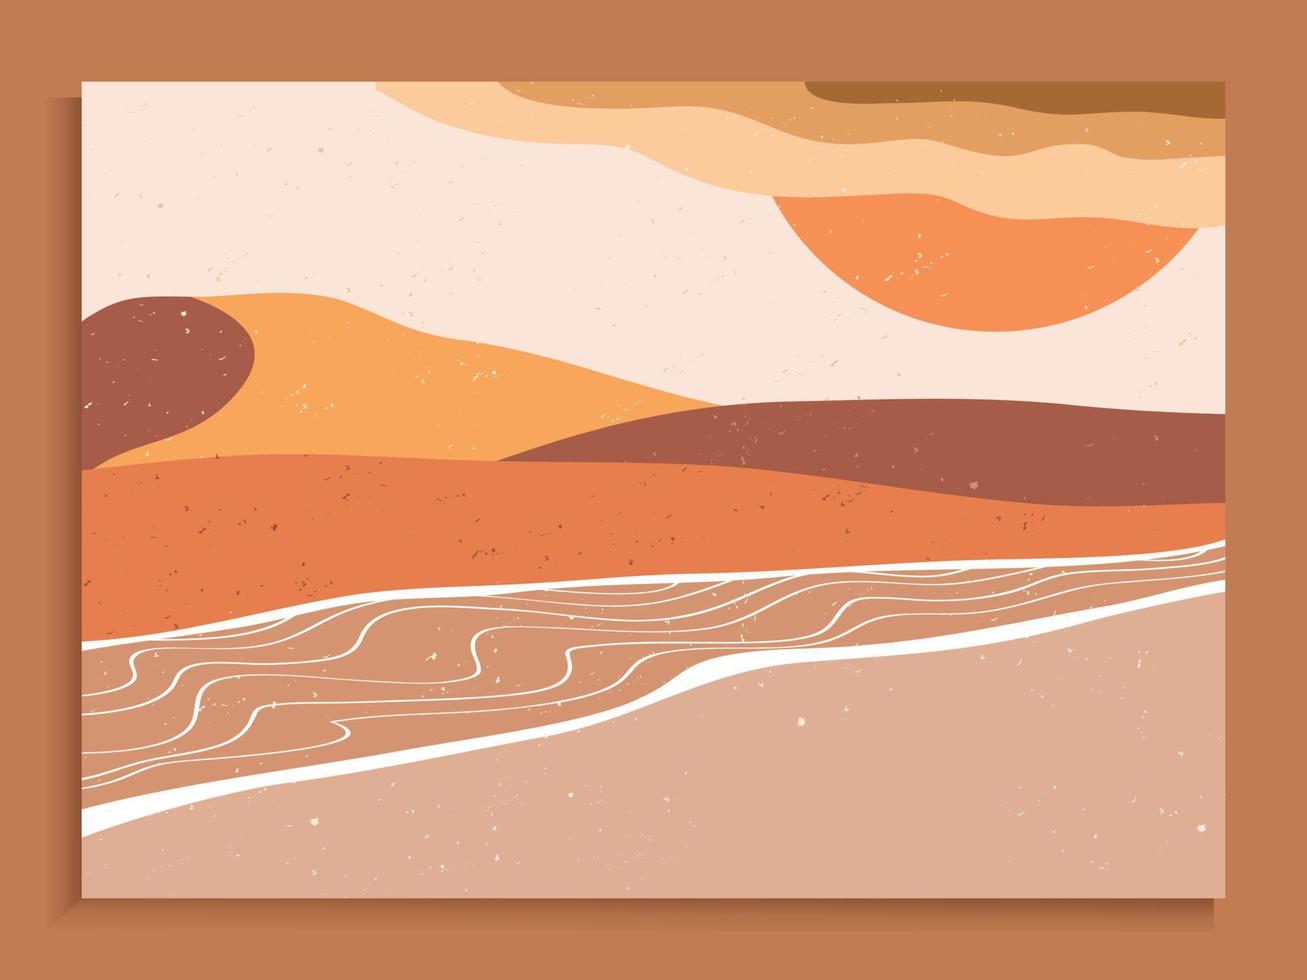 mitten av århundradet modern minimalistisk. abstrakt natur, hav, himmel, sol, flod, rock bergslandskap affisch. geometrisk landskap bakgrund i skandinavisk stil. vektor illustration